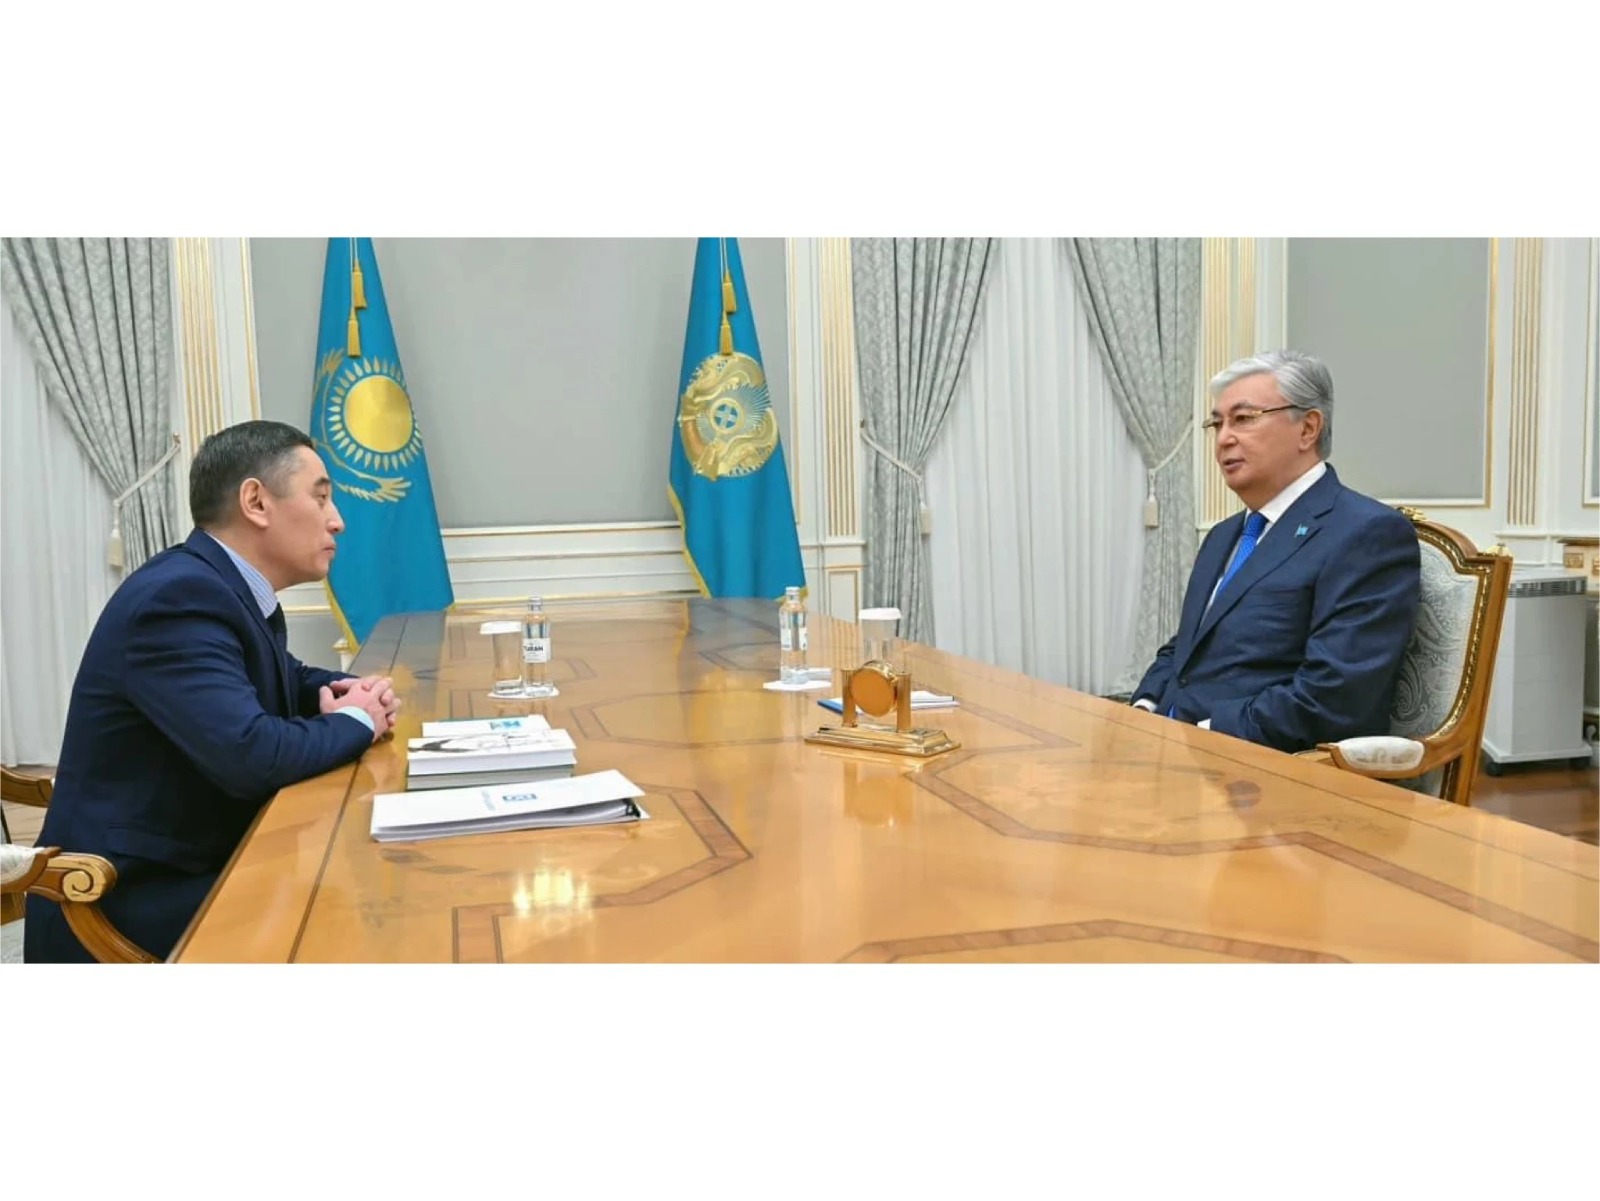 Президент Республики Казахстан Касым-Жомарт Токаев: Как прогрессивная нация мы должны смотреть только вперед! https://kazpravda.kz/n/prezident-respubliki-kazahstan-kasym-zhomart-tokaev-kak-progressivnaya-natsiya-my-dolzhny-smotret-tolko-vpered/